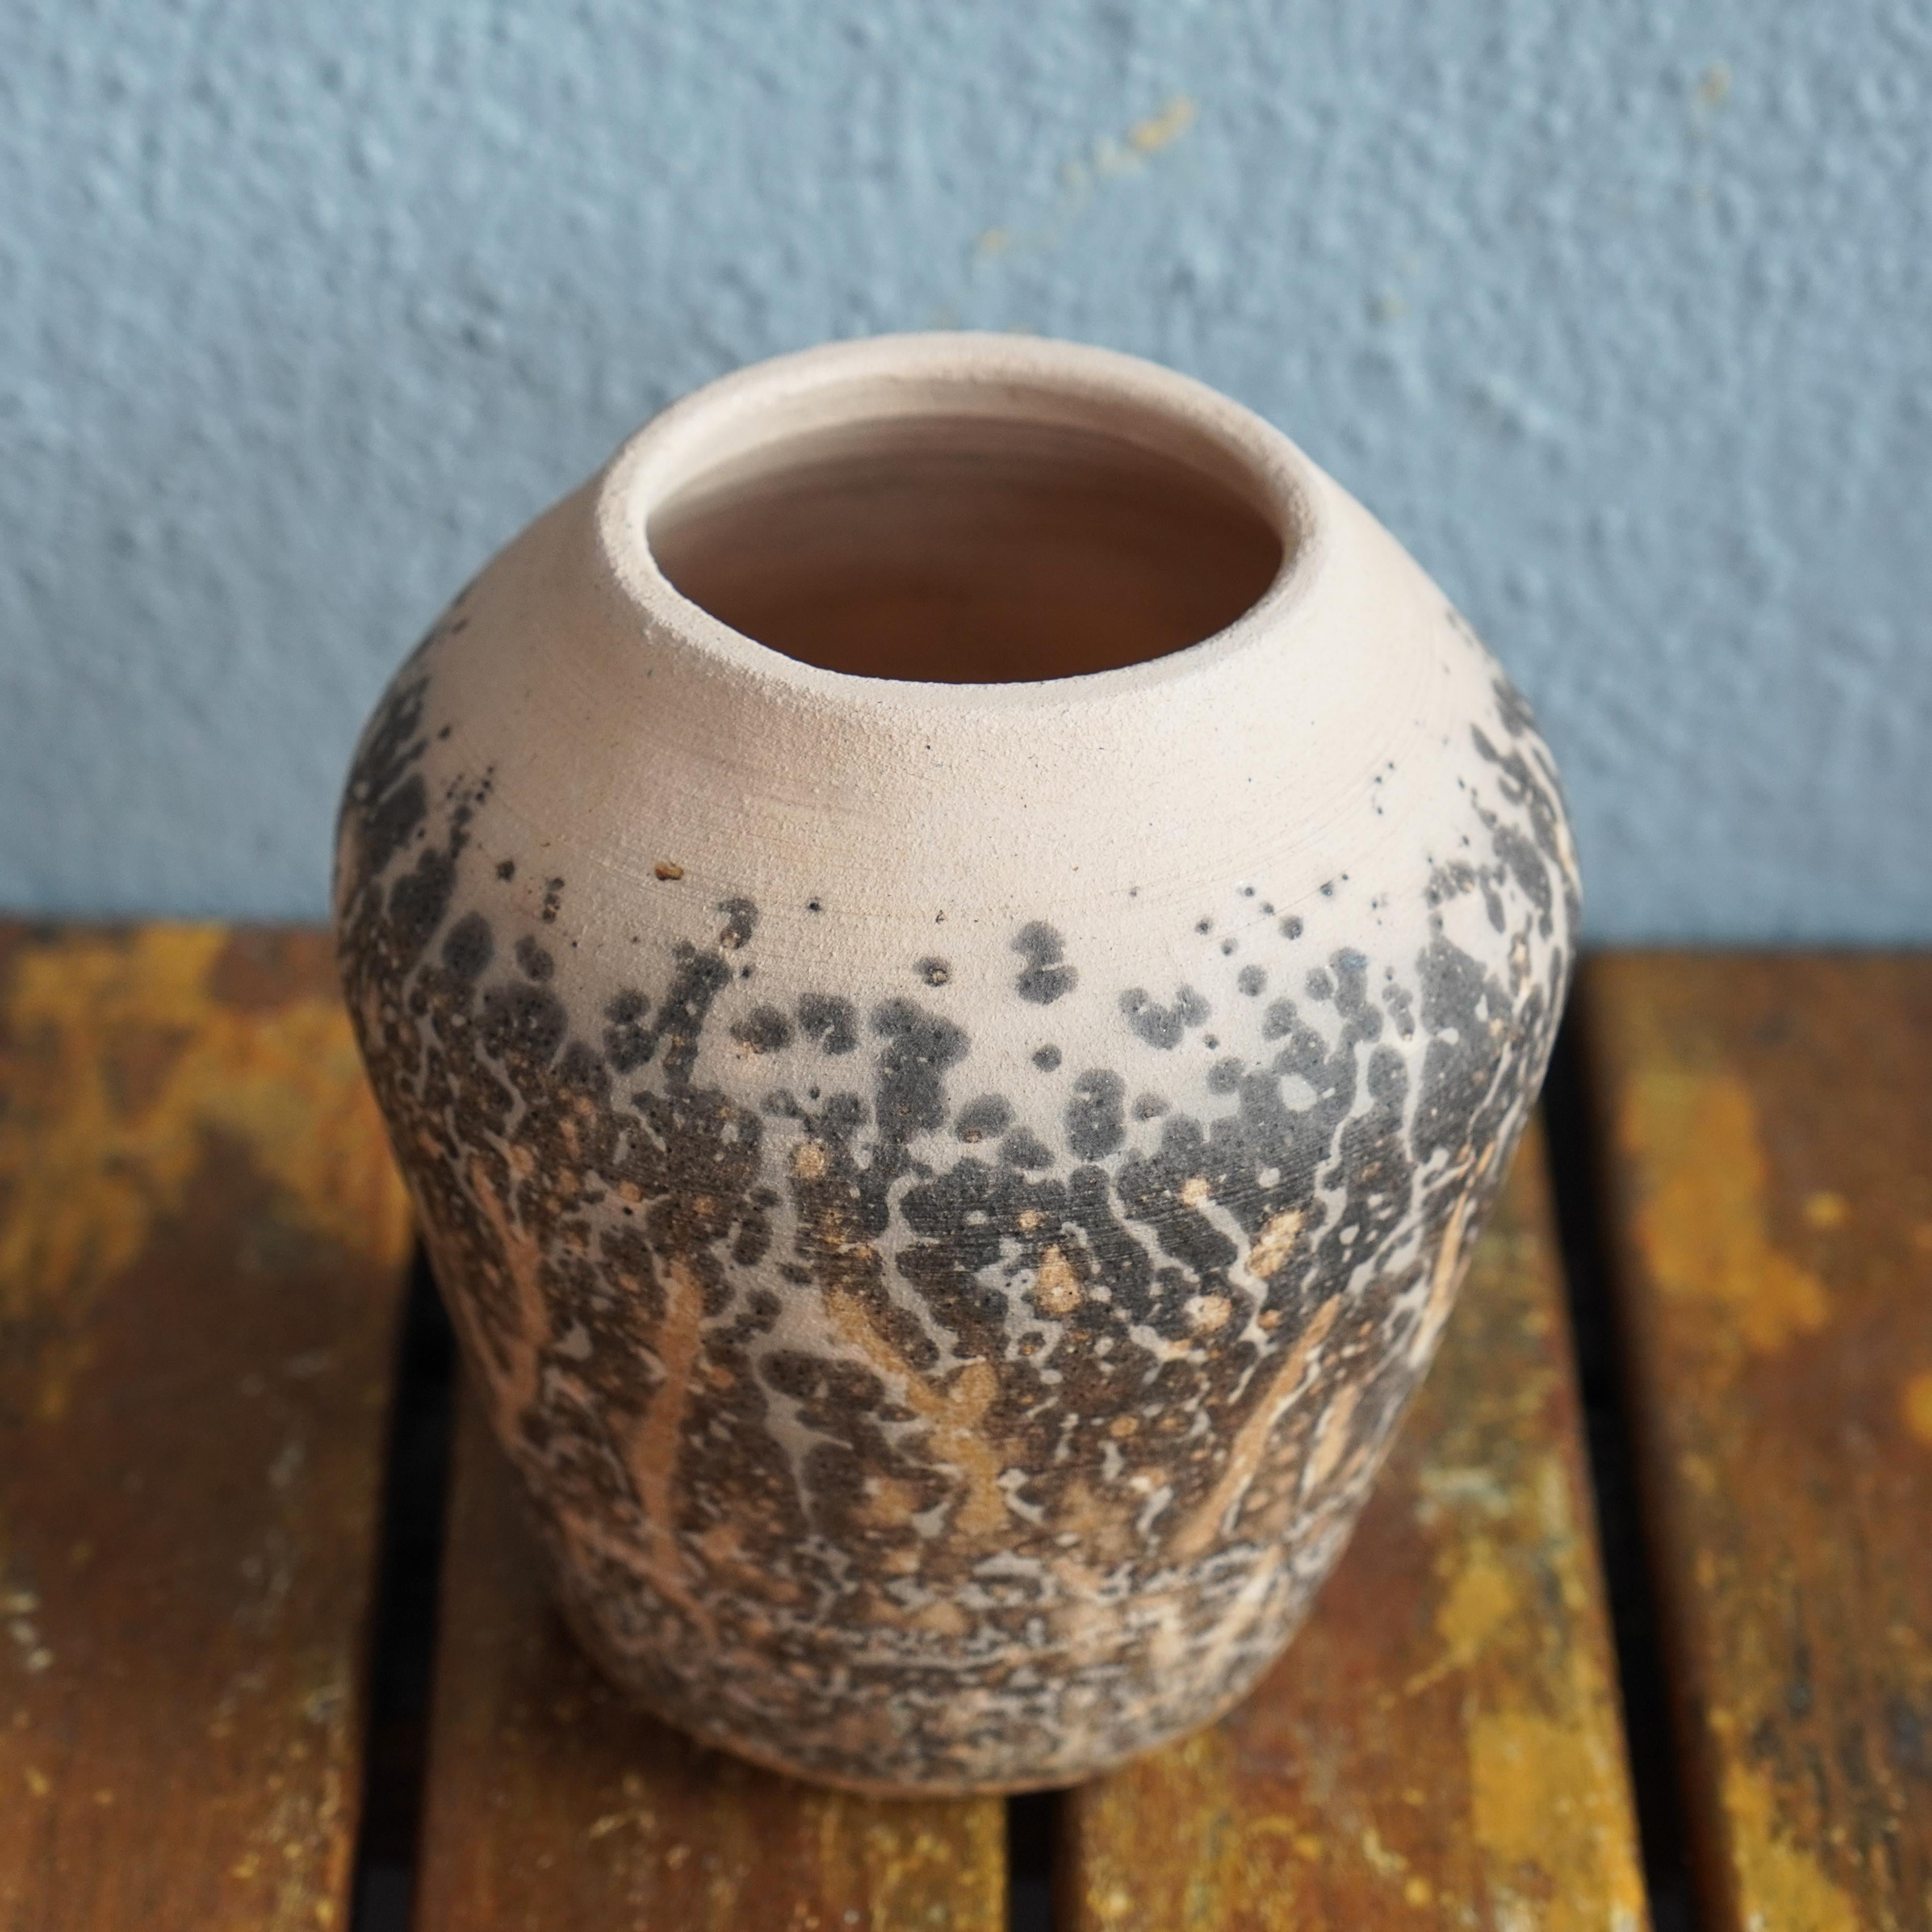 Hoseki (宝石) ~ (n) Edelstein

Die Hoseki-Vase wird im Japanischen wegen ihrer leicht eckigen Form 